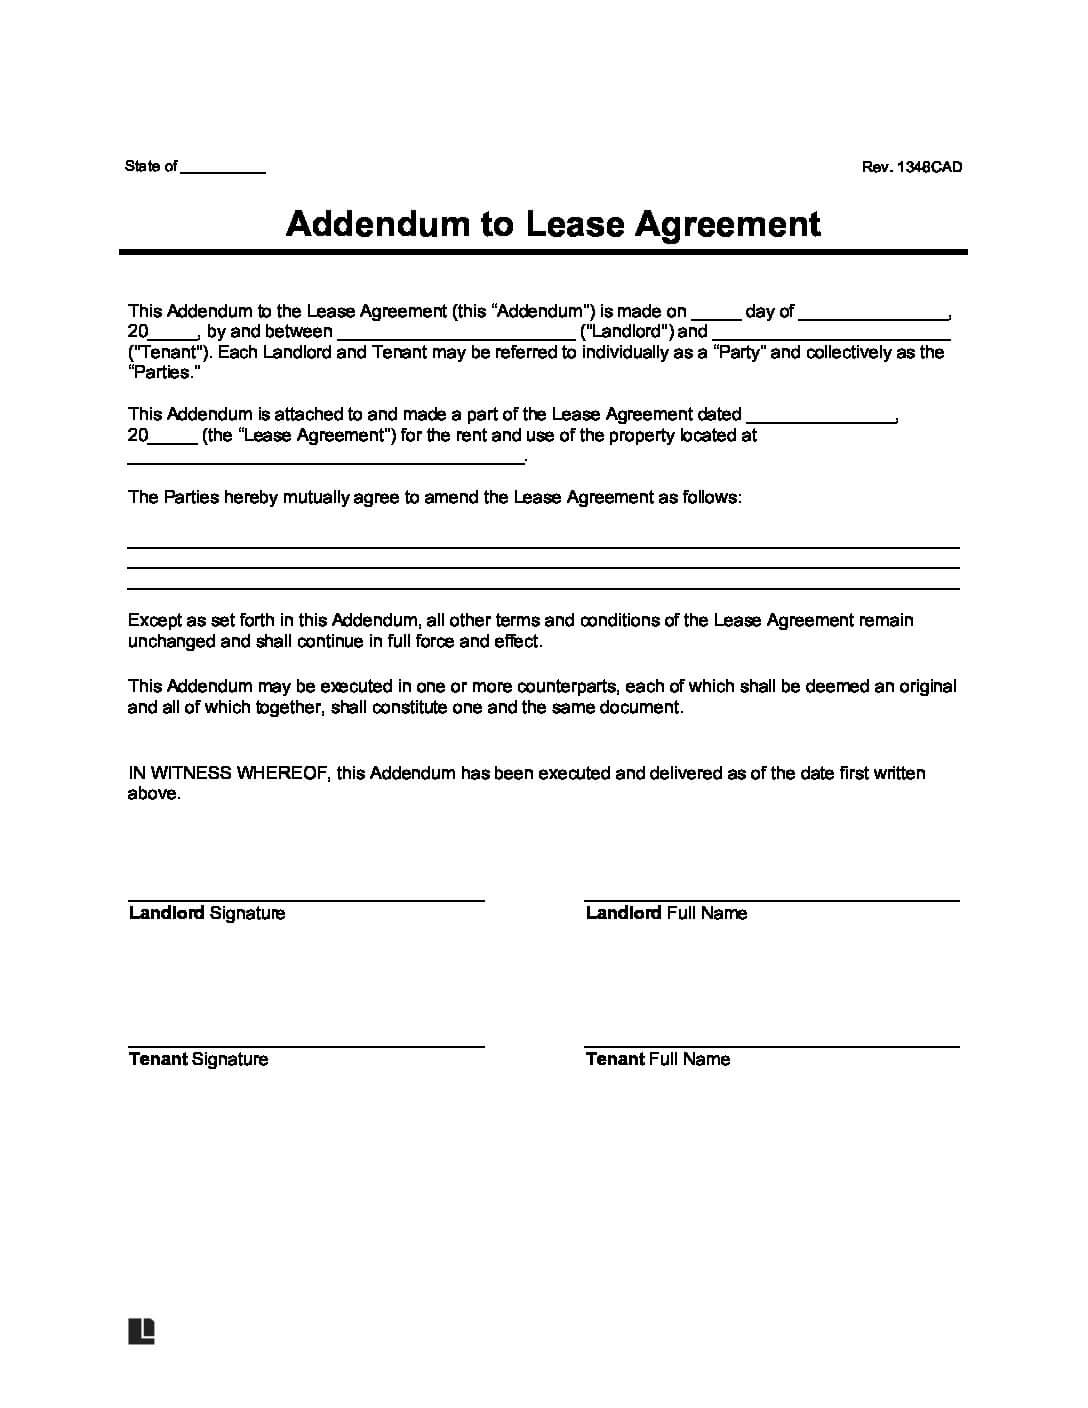 add an addendum contract